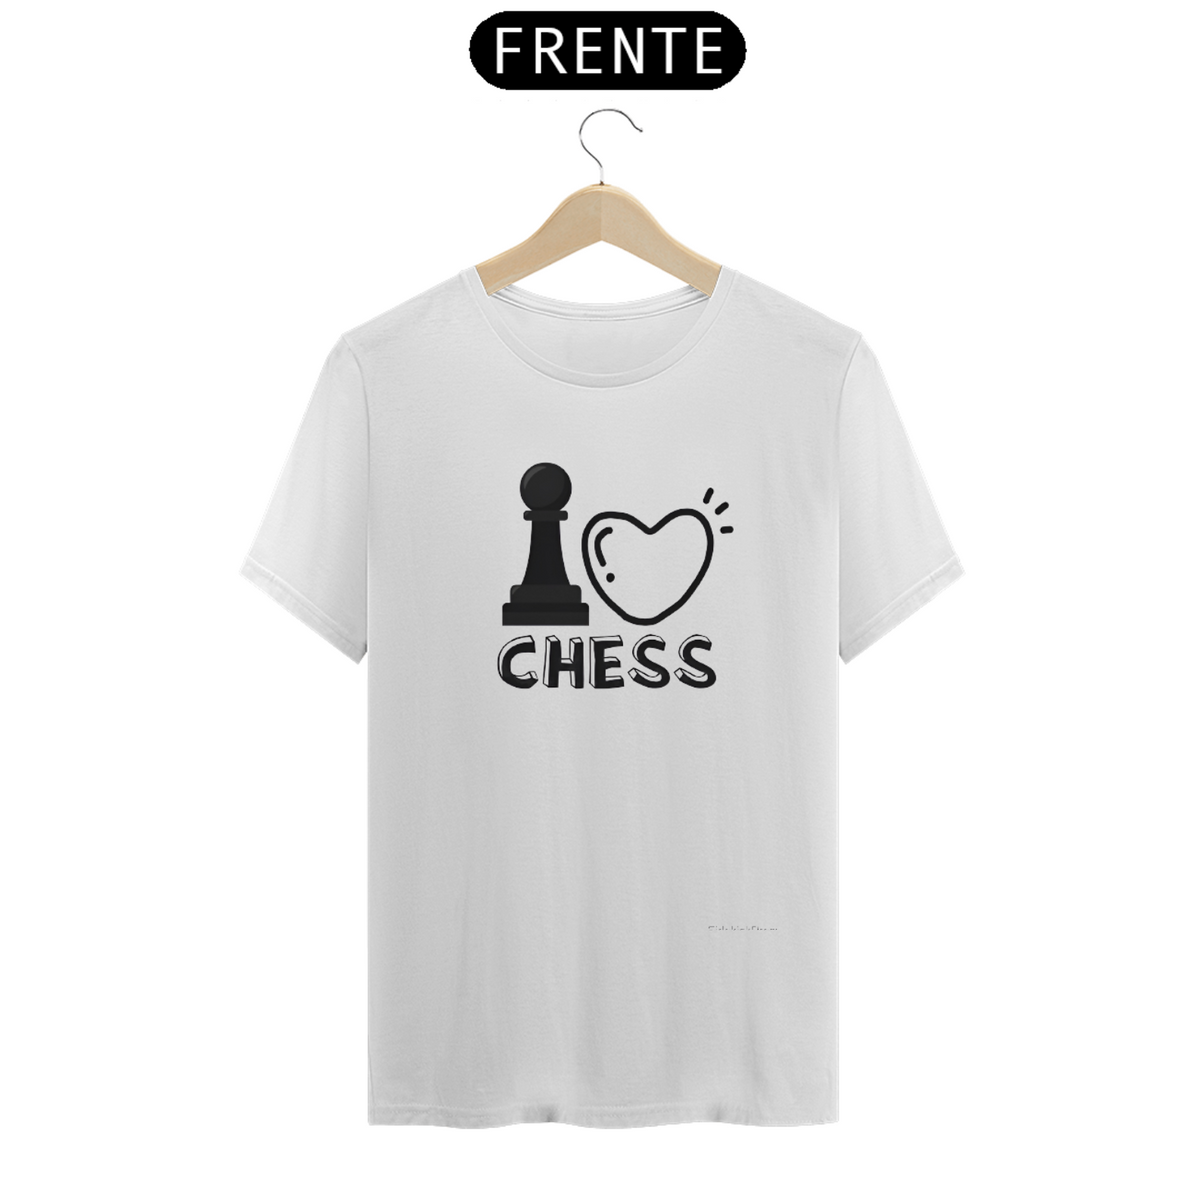 Nome do produto: I LOVE CHESS